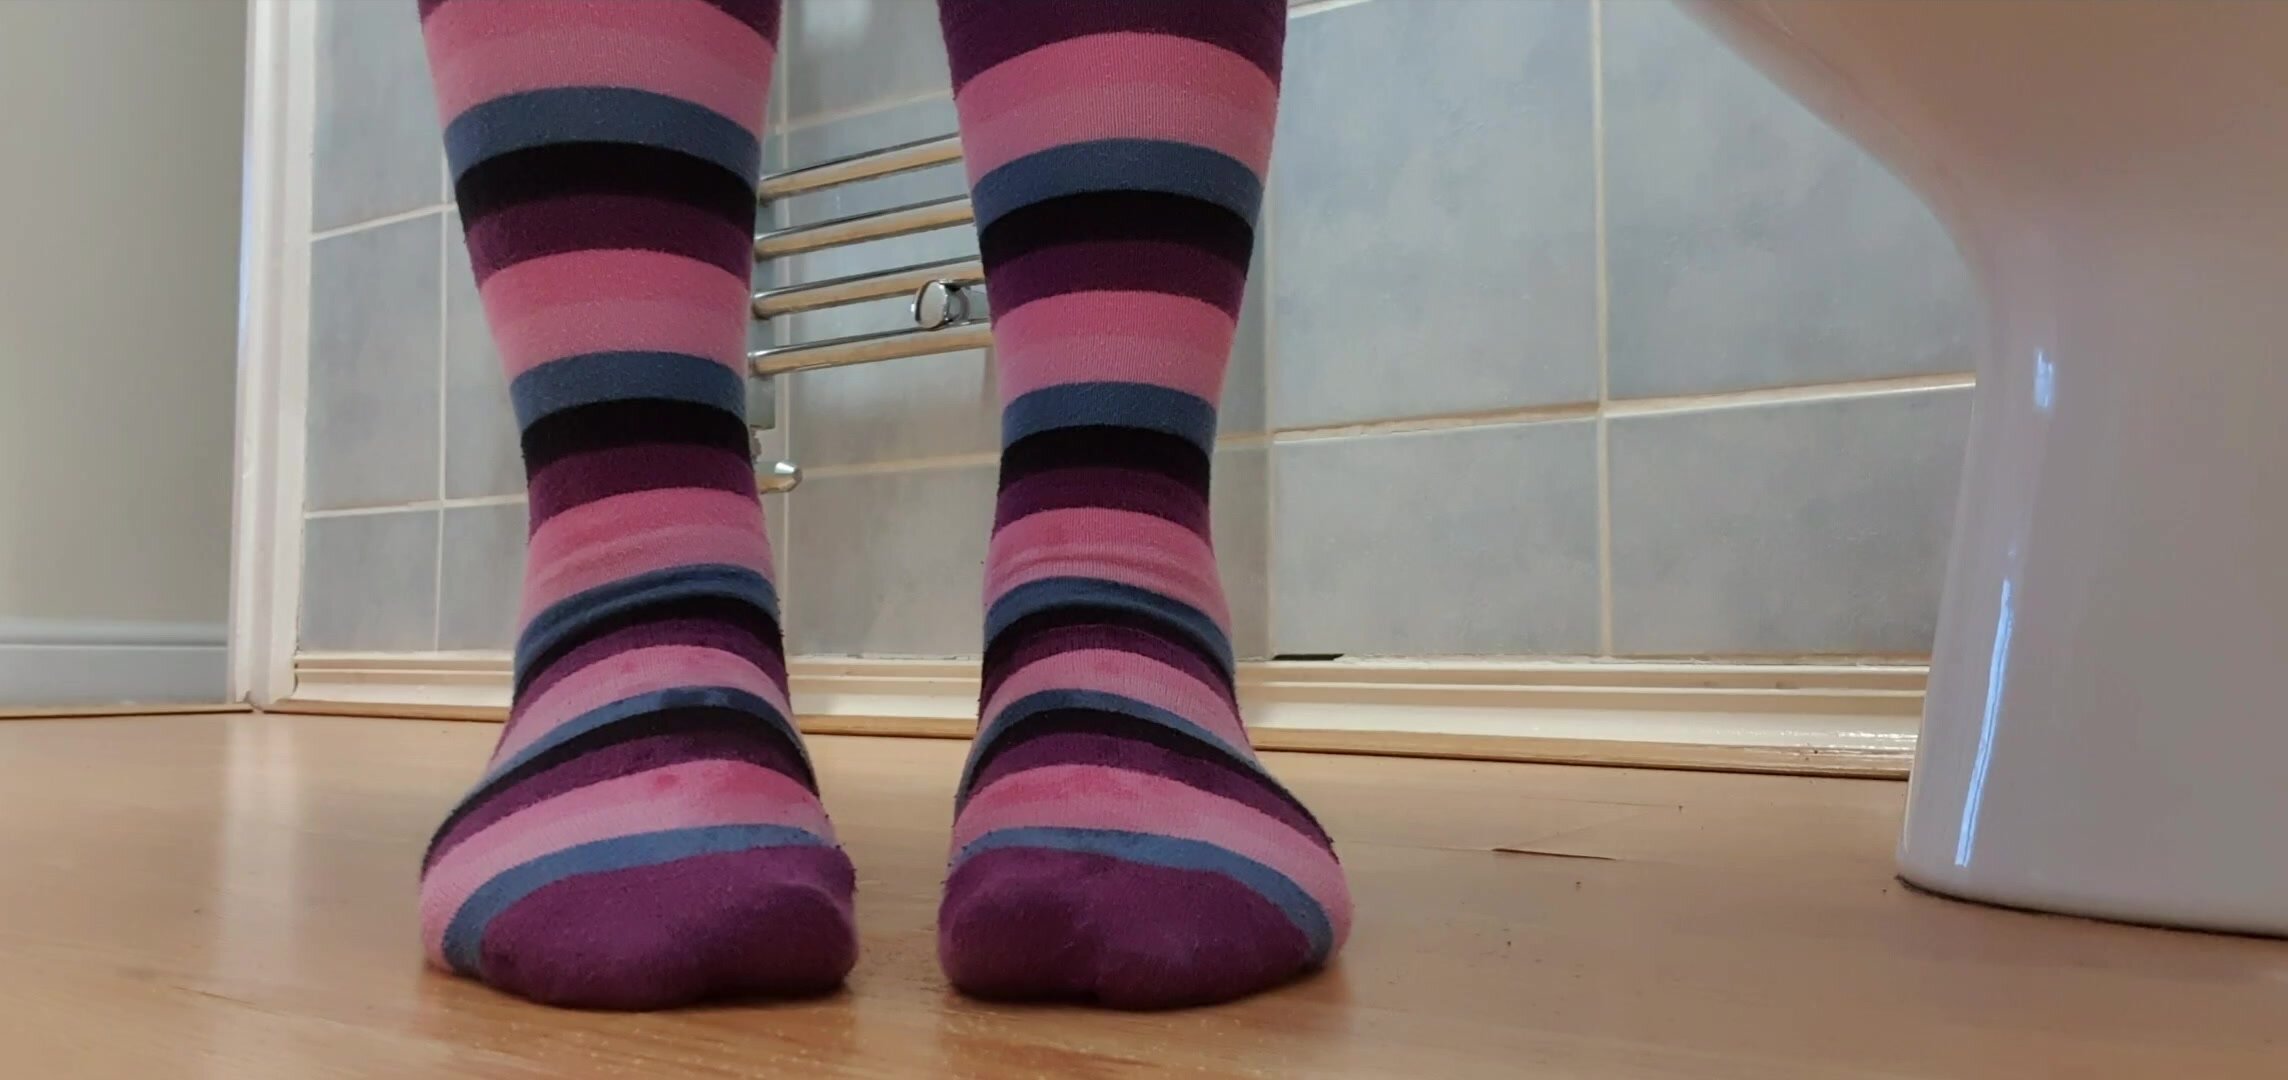 My stripy socks get wet